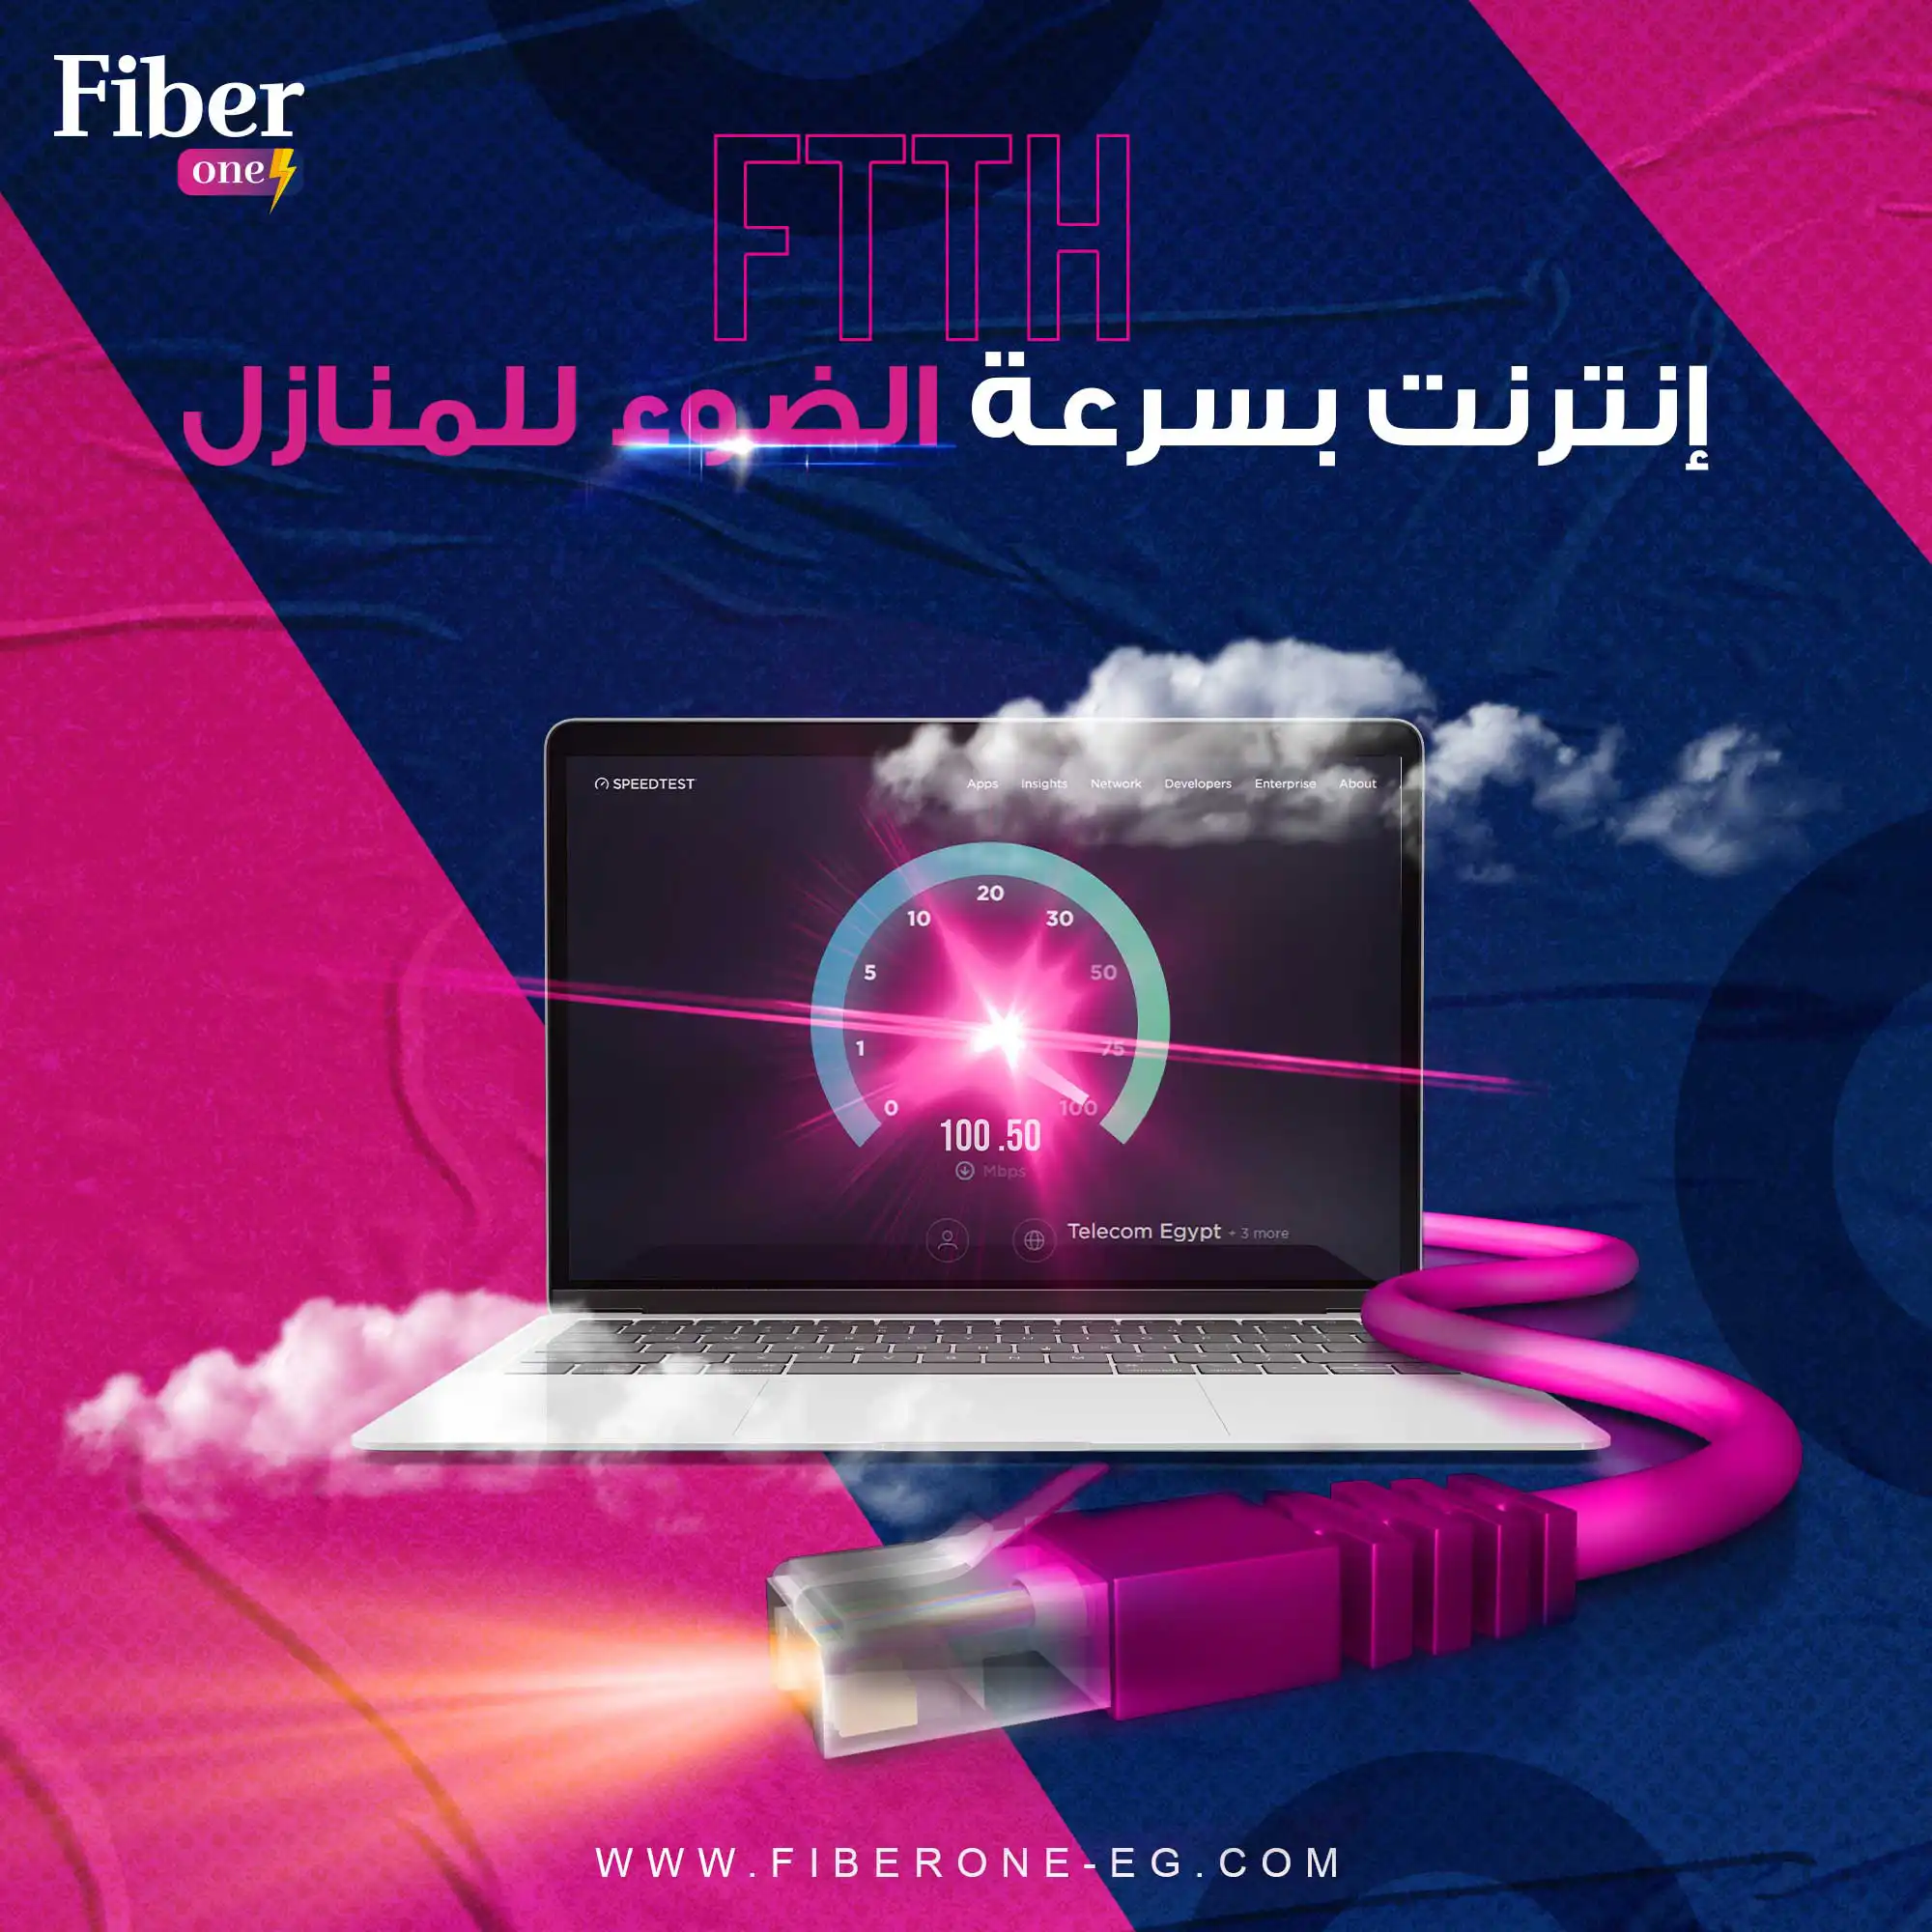 fiber one social media 5